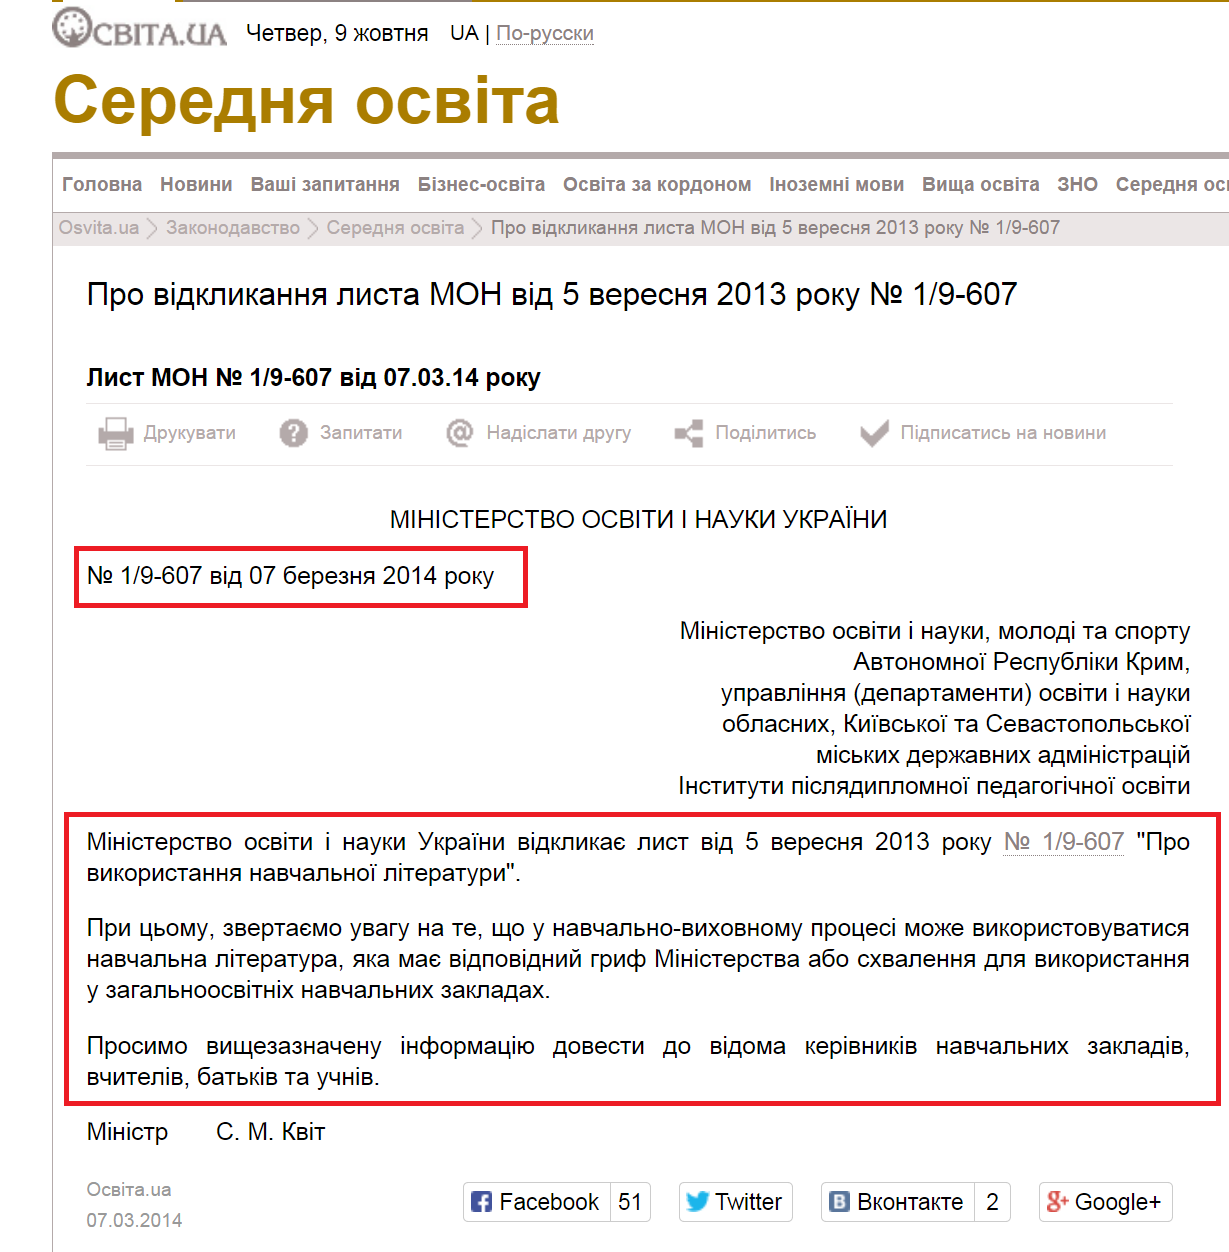 http://osvita.ua/legislation/Ser_osv/40086/